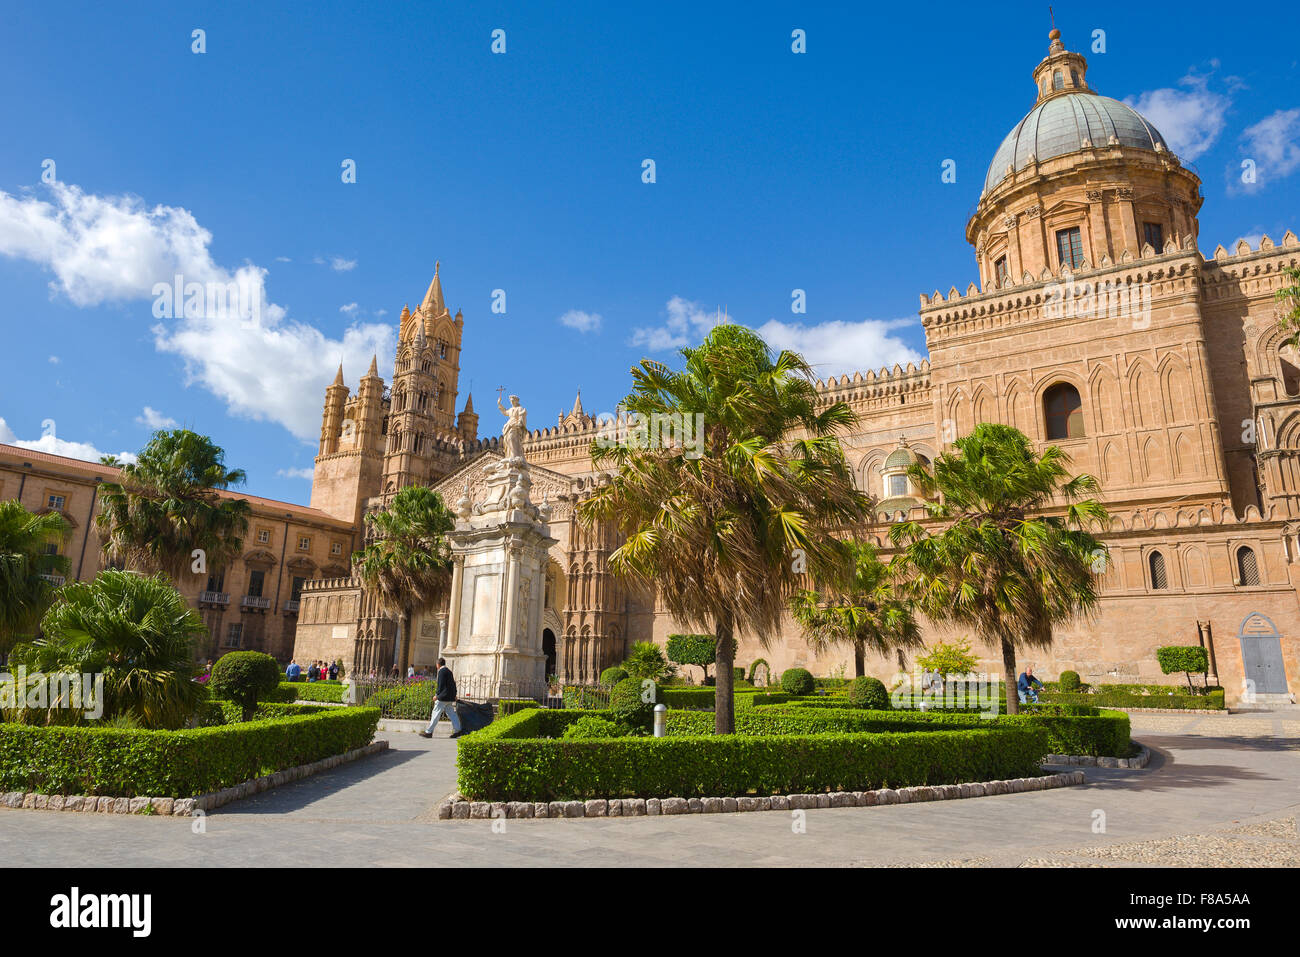 Catedral de Palermo, vista de la catedral del siglo 12, la Cattedrale Metropolitana della Santa Vergine Maria Assunta en Palermo, Sicilia, Italia Foto de stock